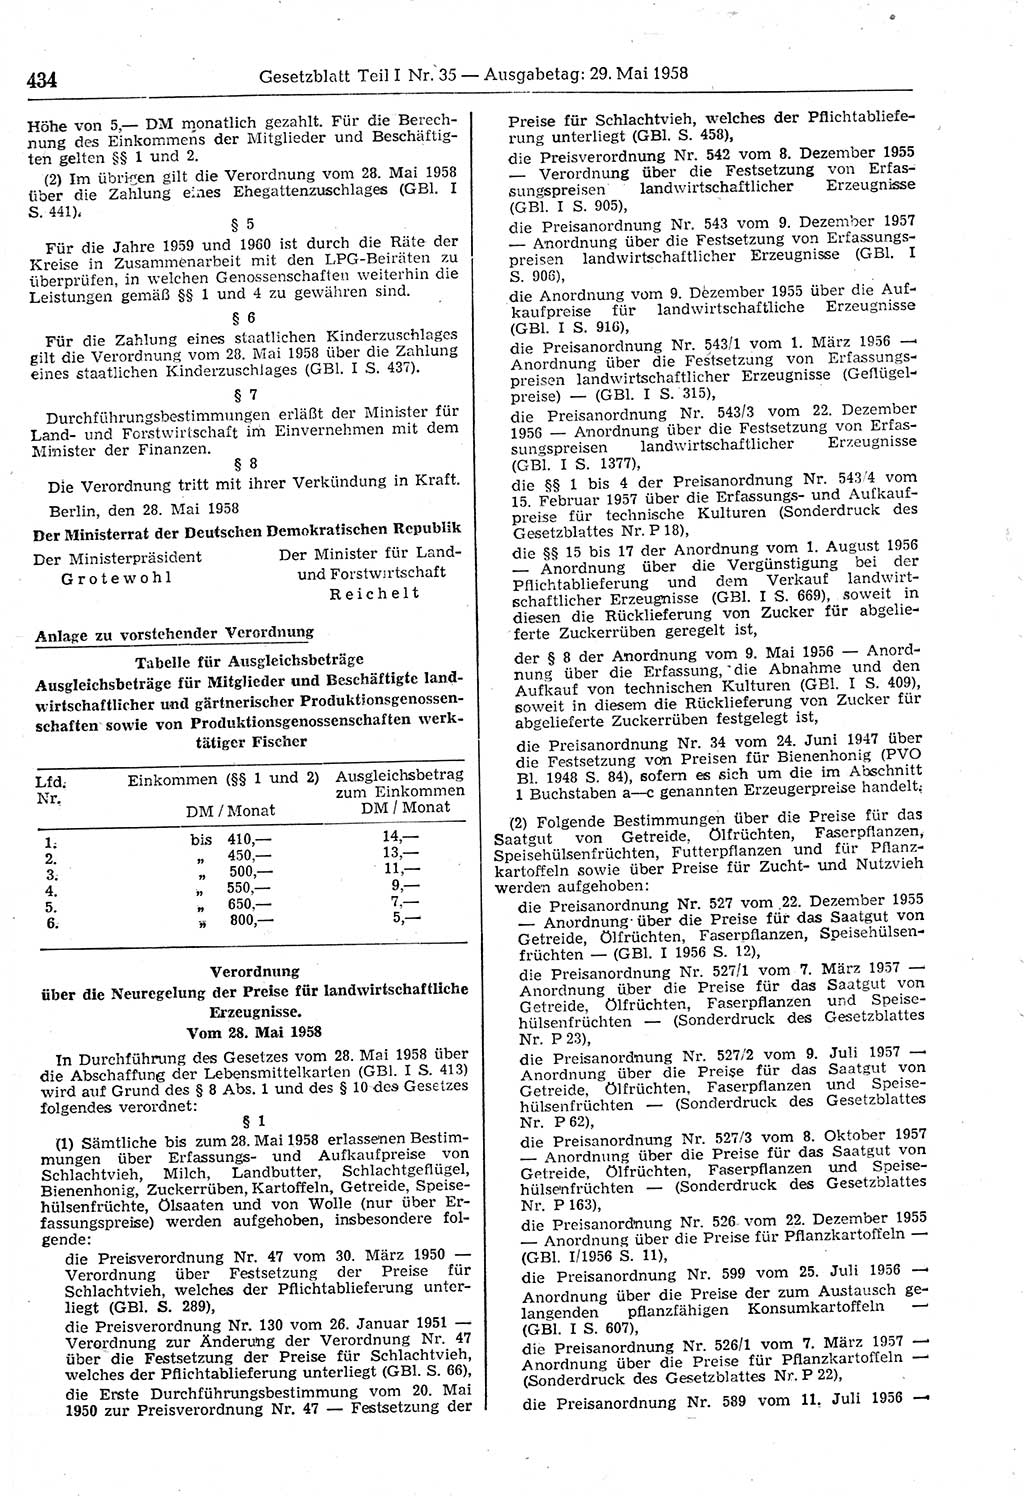 Gesetzblatt (GBl.) der Deutschen Demokratischen Republik (DDR) Teil Ⅰ 1958, Seite 434 (GBl. DDR Ⅰ 1958, S. 434)